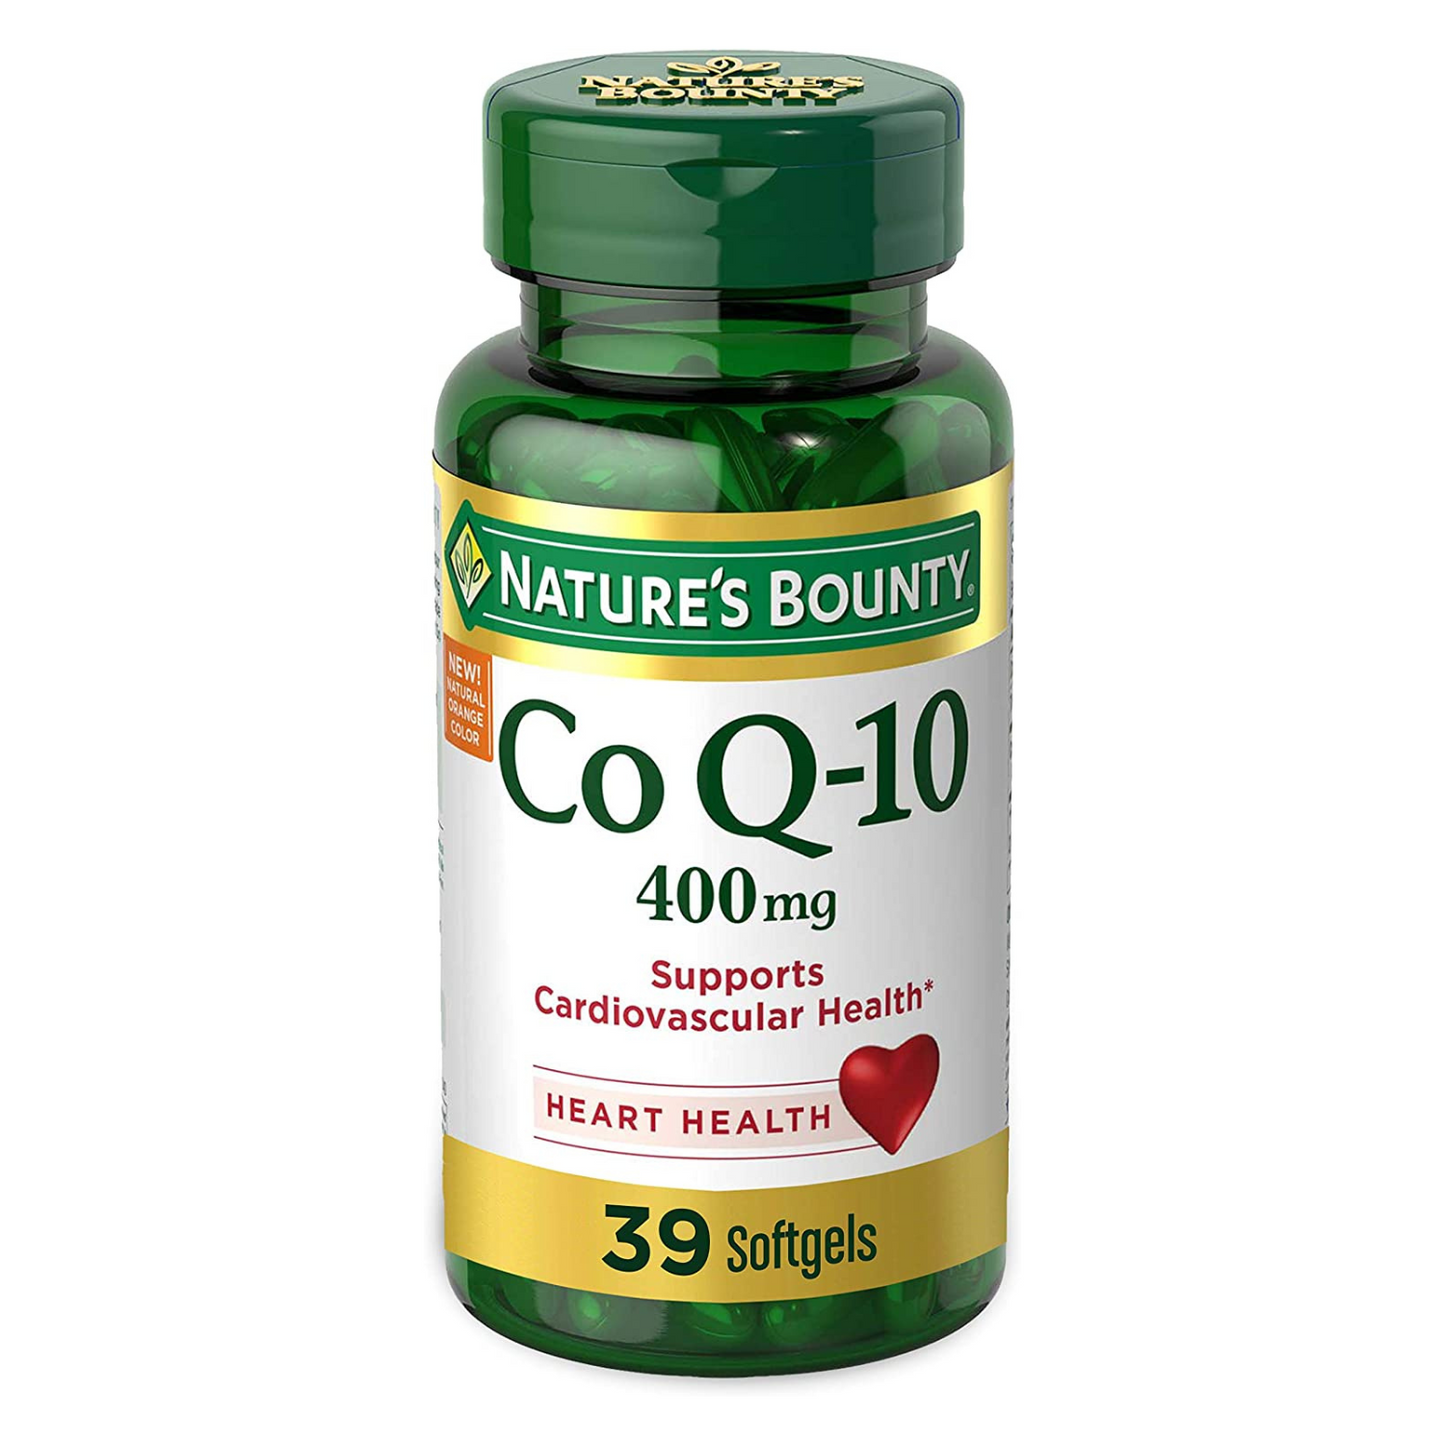 Nature's Bounty - Co Q-10 400 mg - 39 Softgels